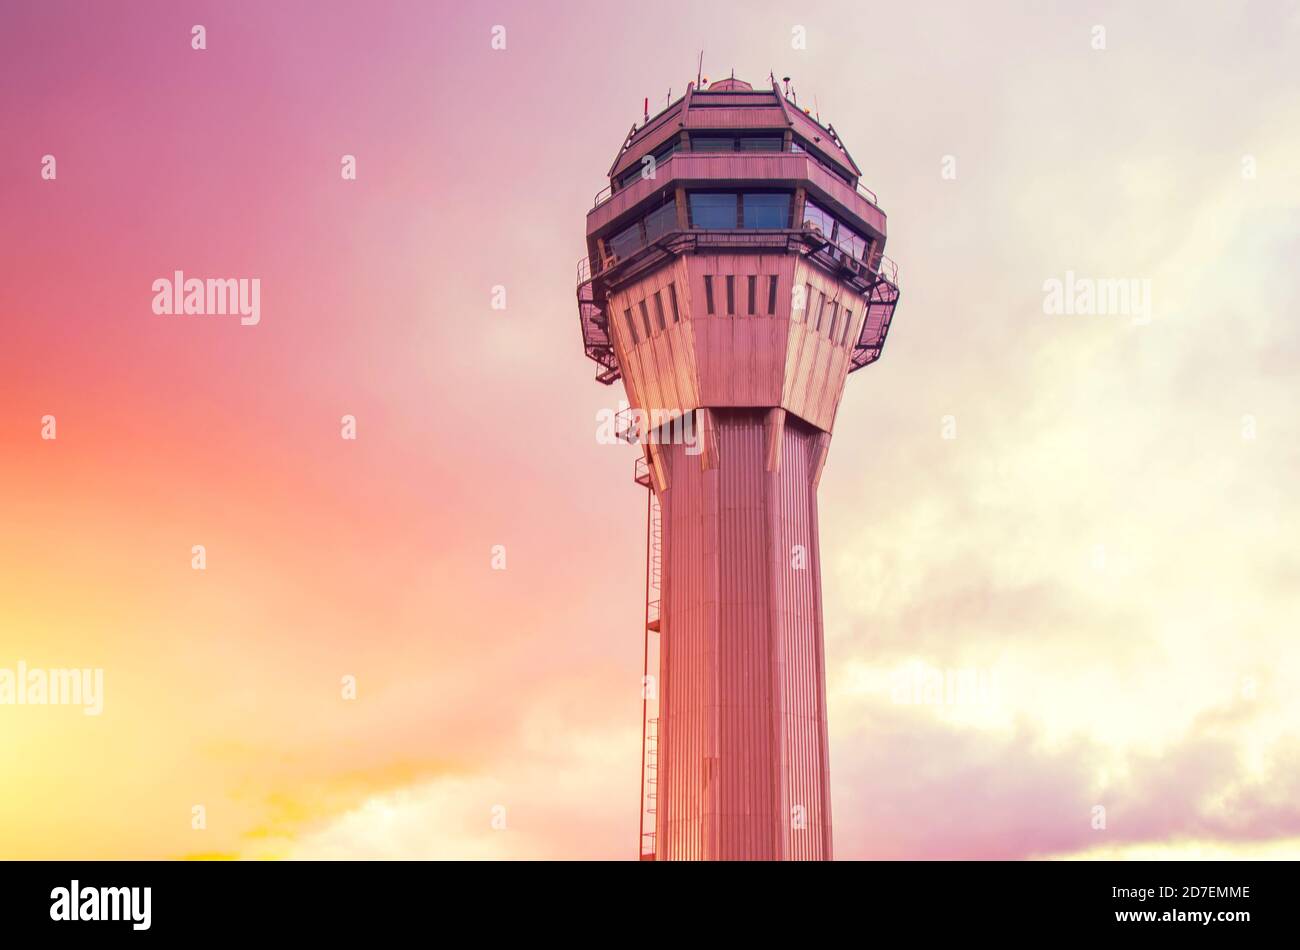 Torre de control de tráfico del aeropuerto solo con el fondo de la puesta de sol naranja rosa cielo y nubes Foto de stock